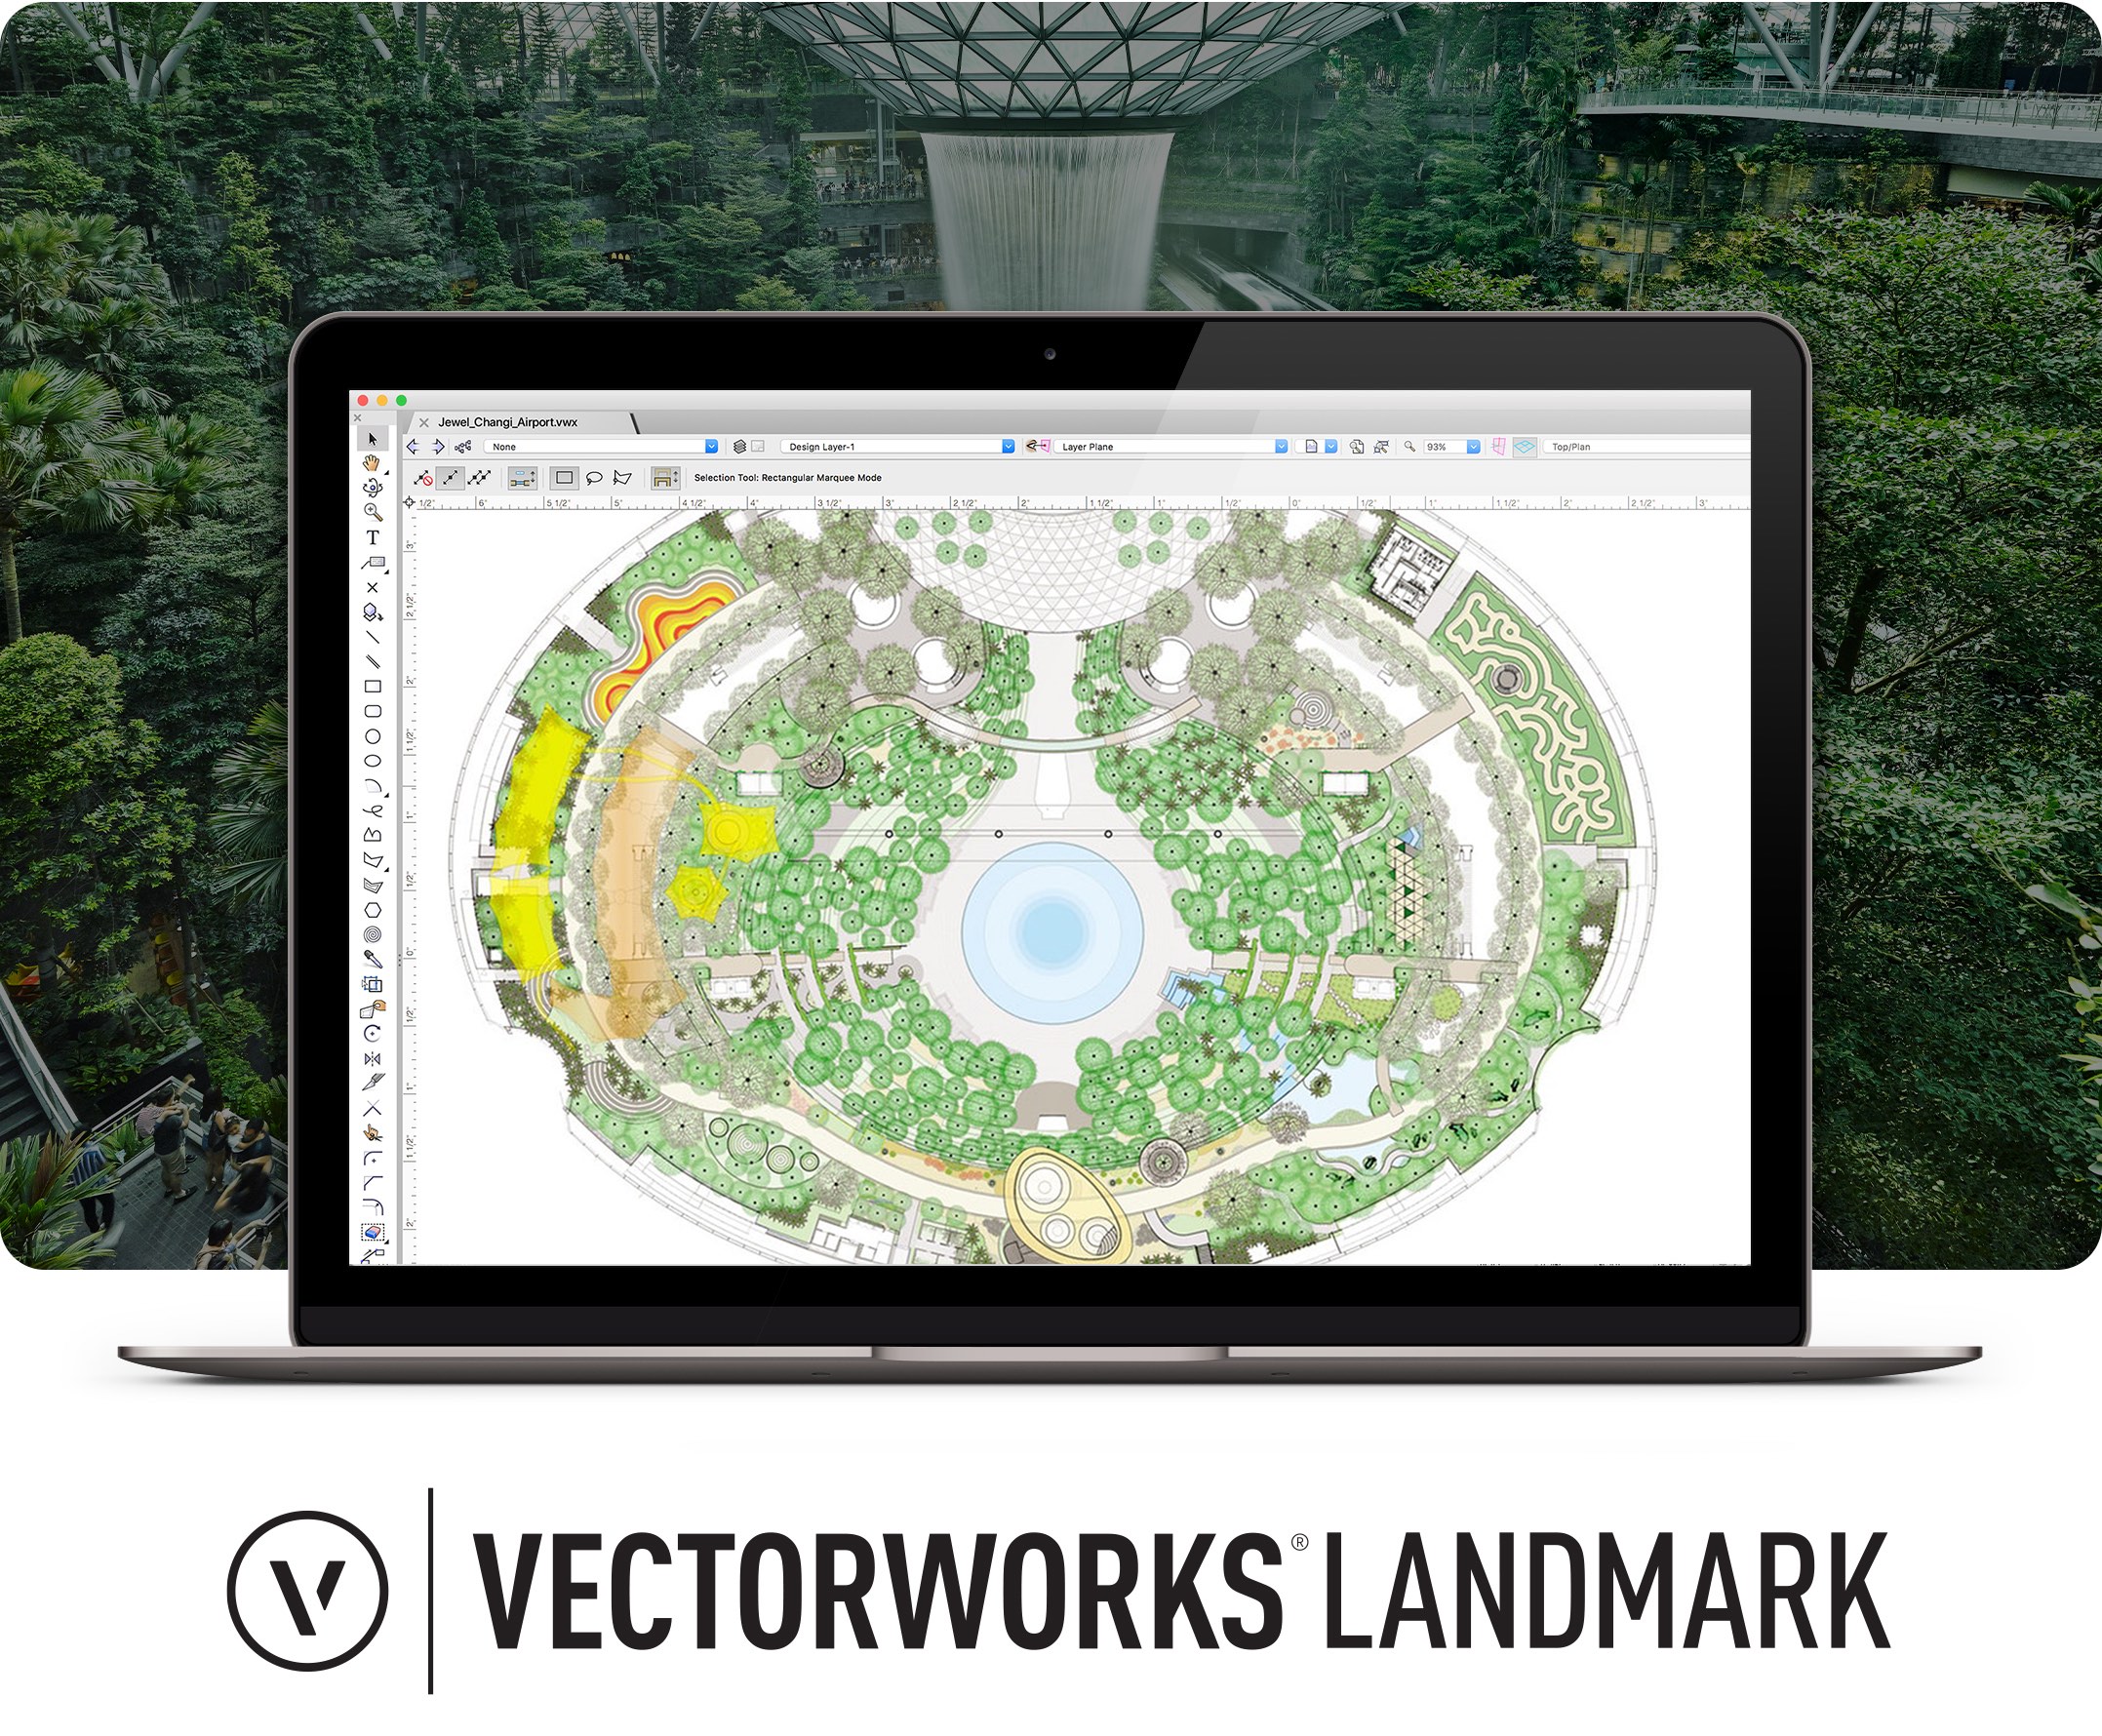 Vectorworks Landmark 2019 Getting Started Tutorial